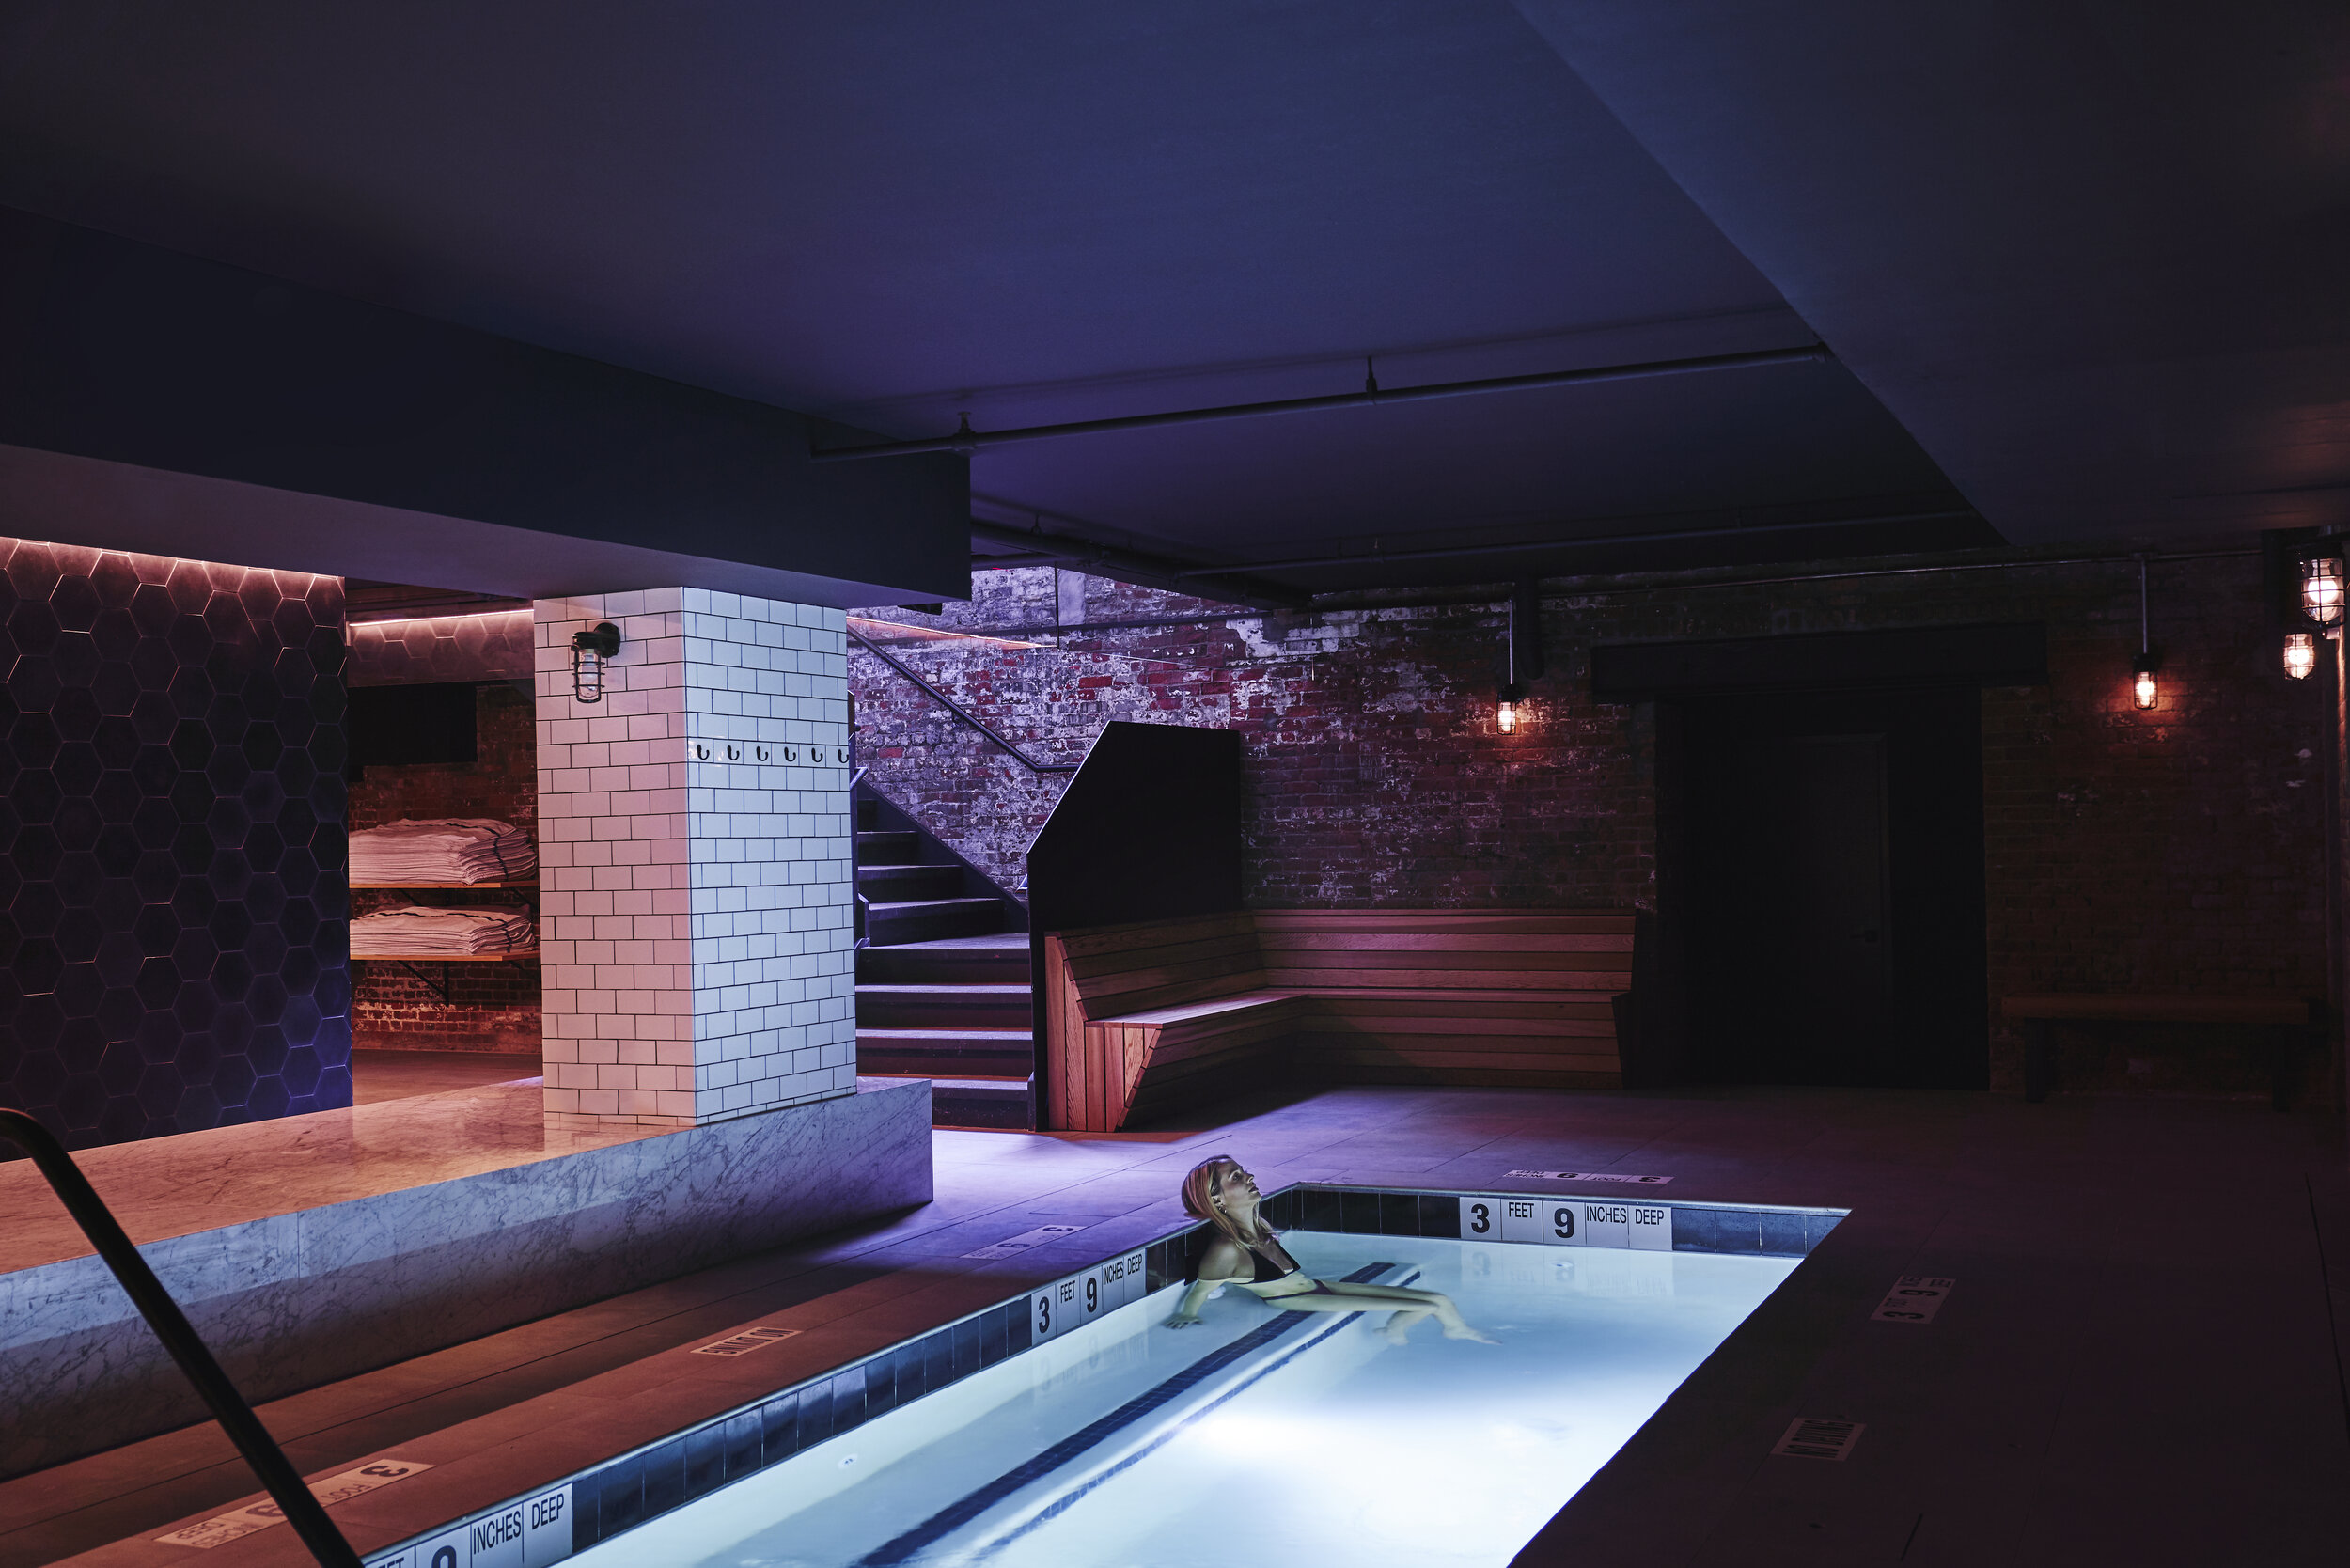 СПА-салон в Нью-Йорке использует тепло от майнинга биткоинов для обогрева бассейнов